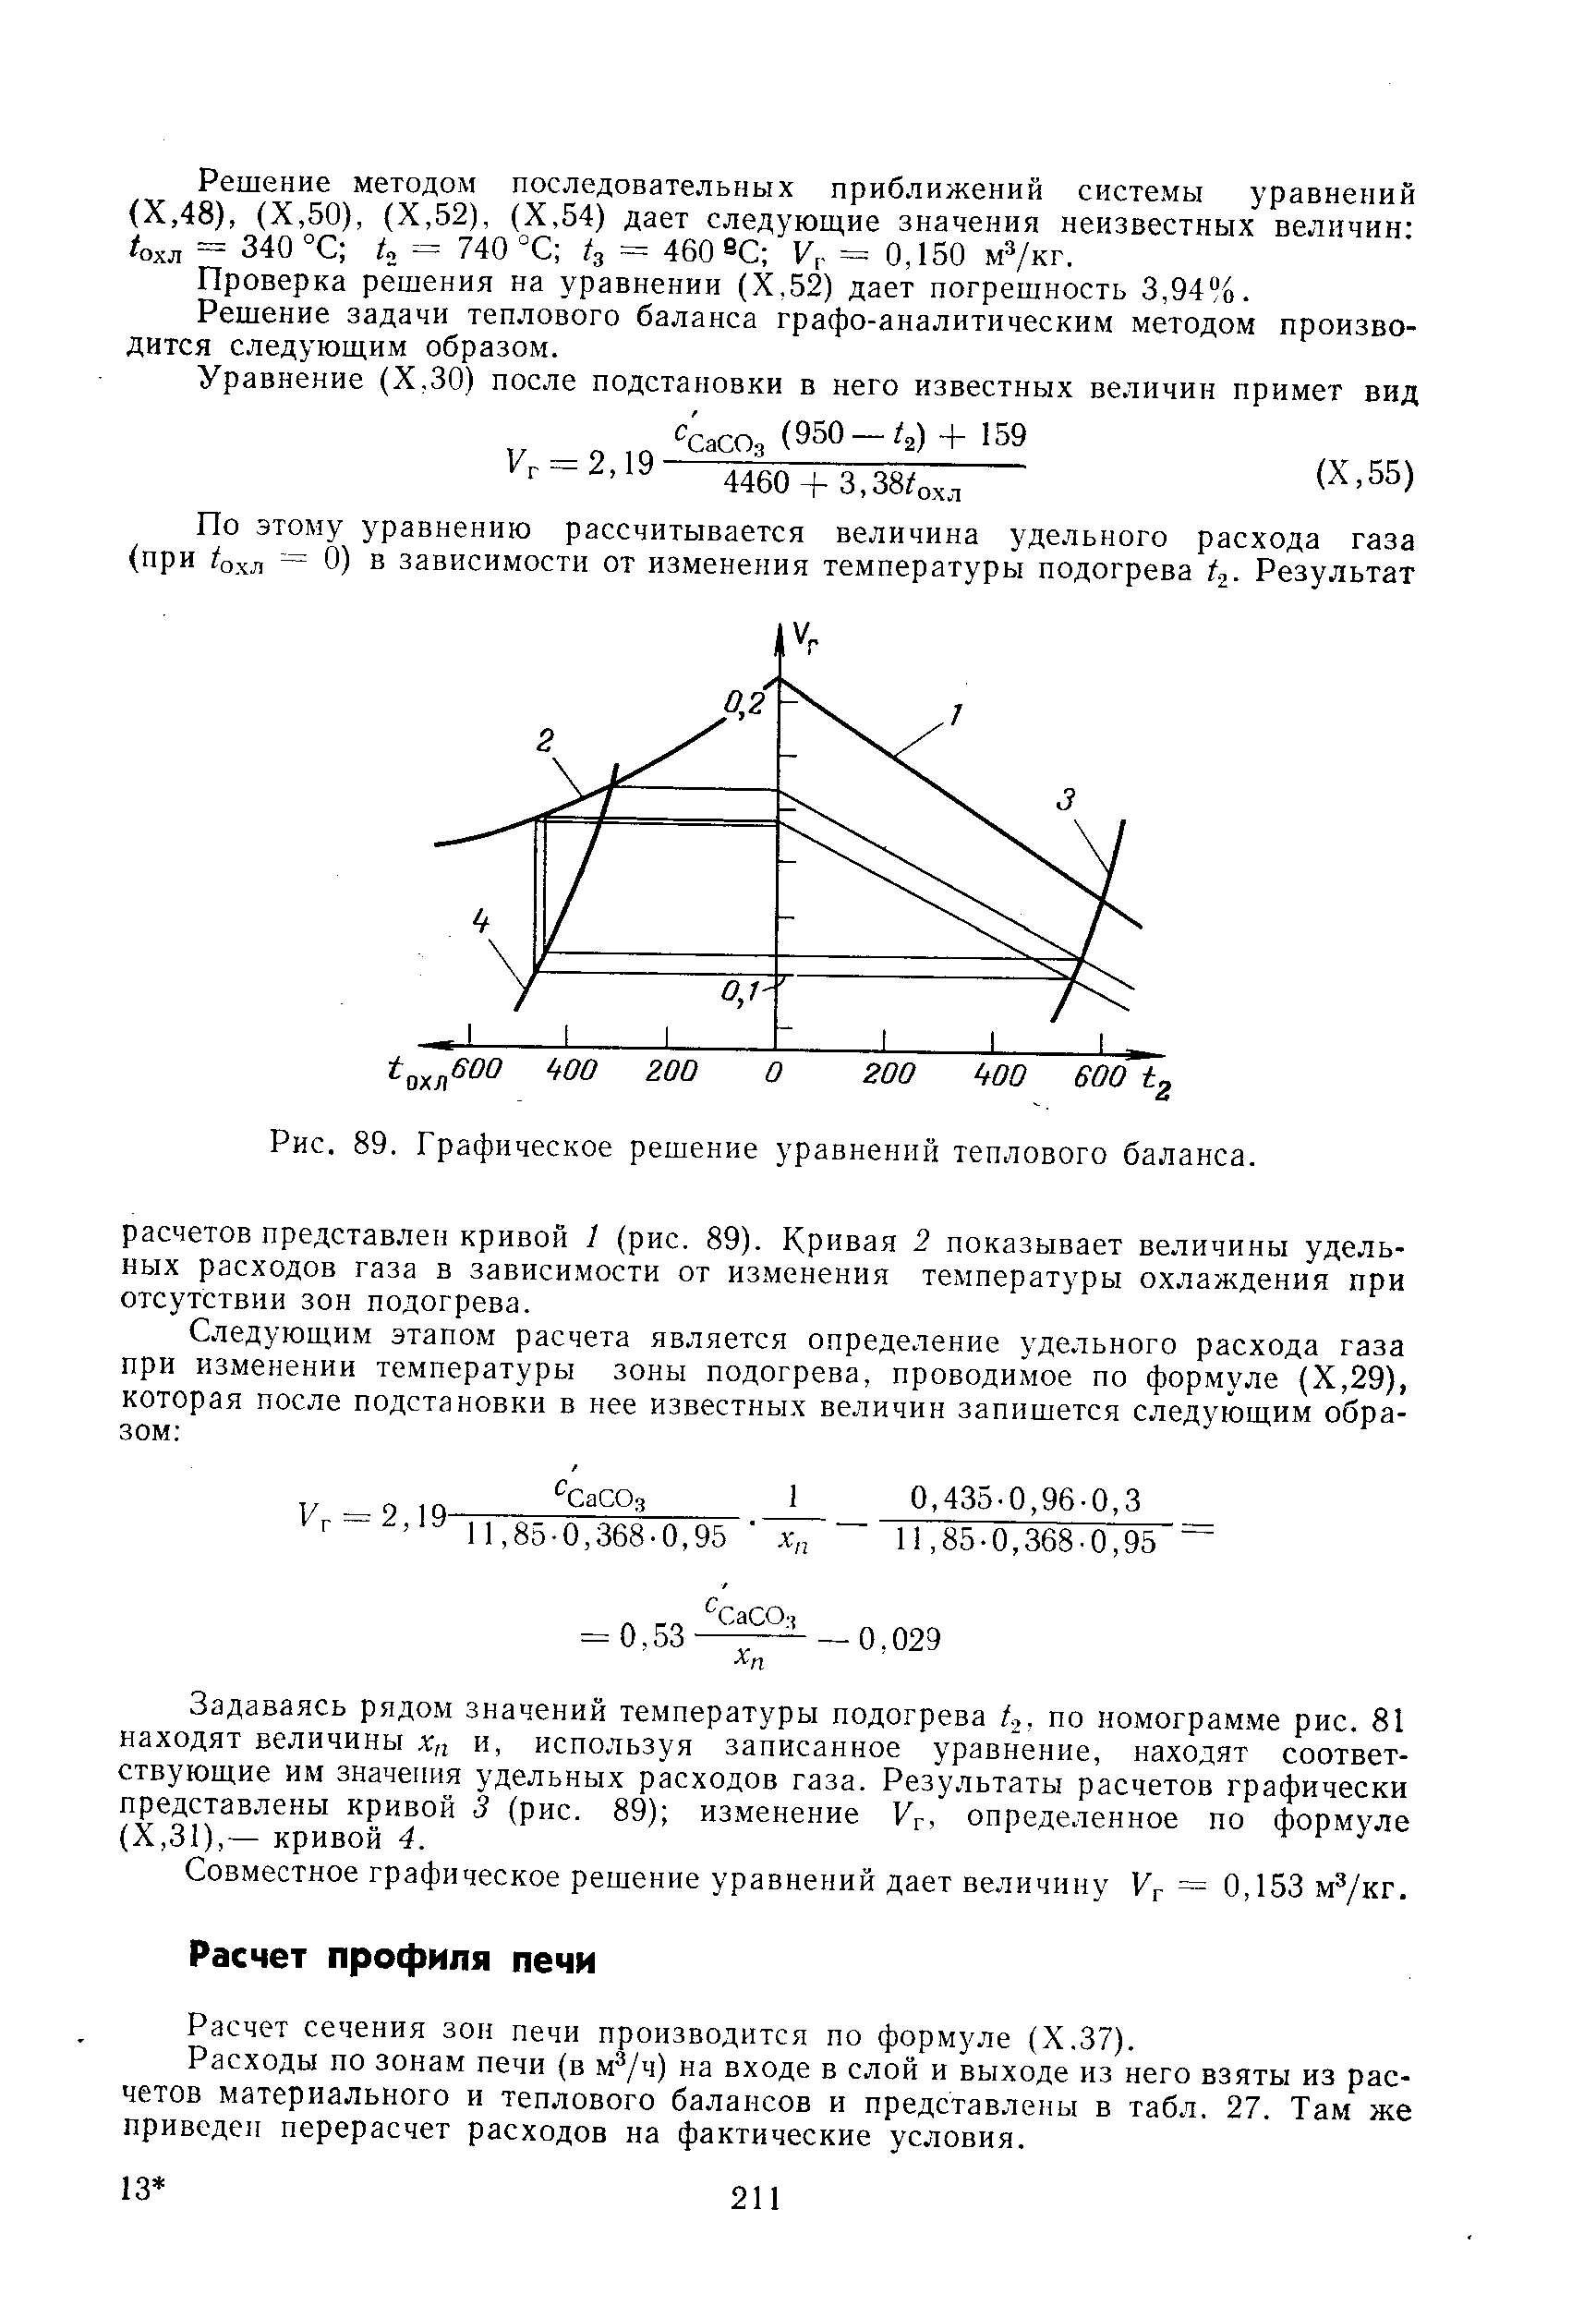 Расчет сечения зон печи производится по формуле (Х.37).